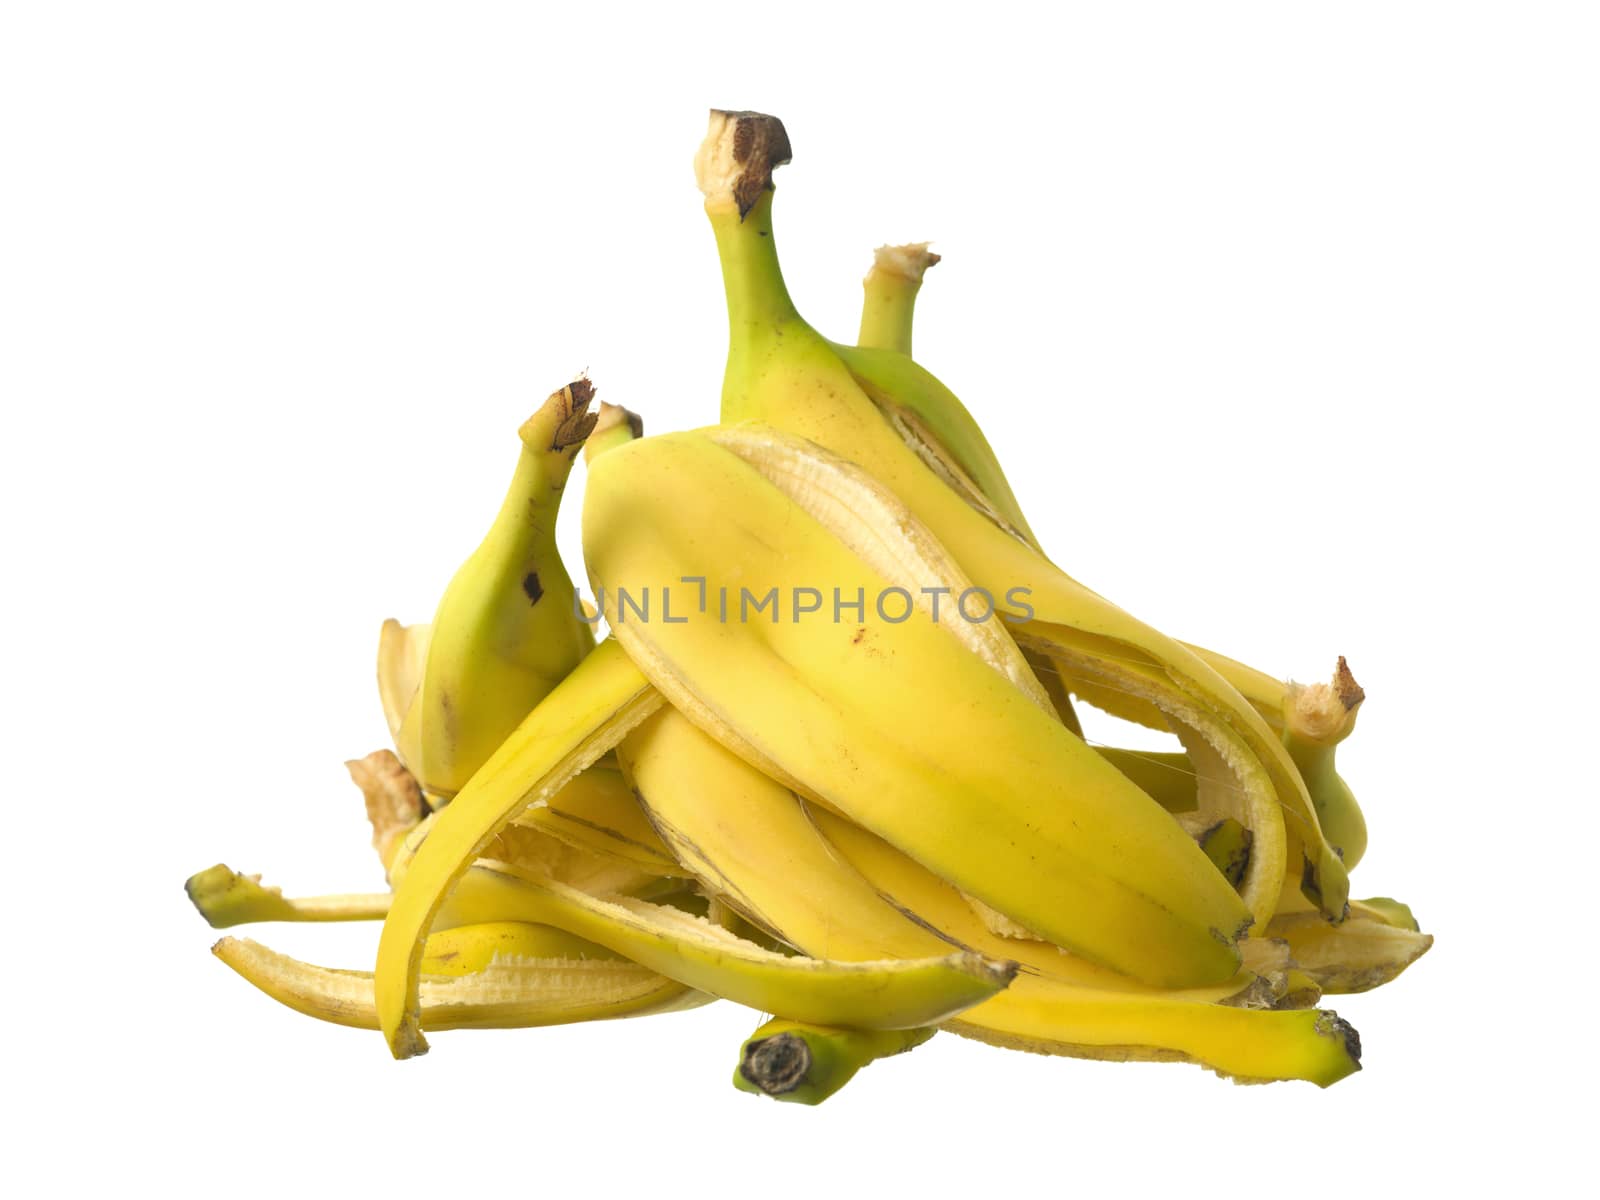 Stack of Banana skin by gemenacom